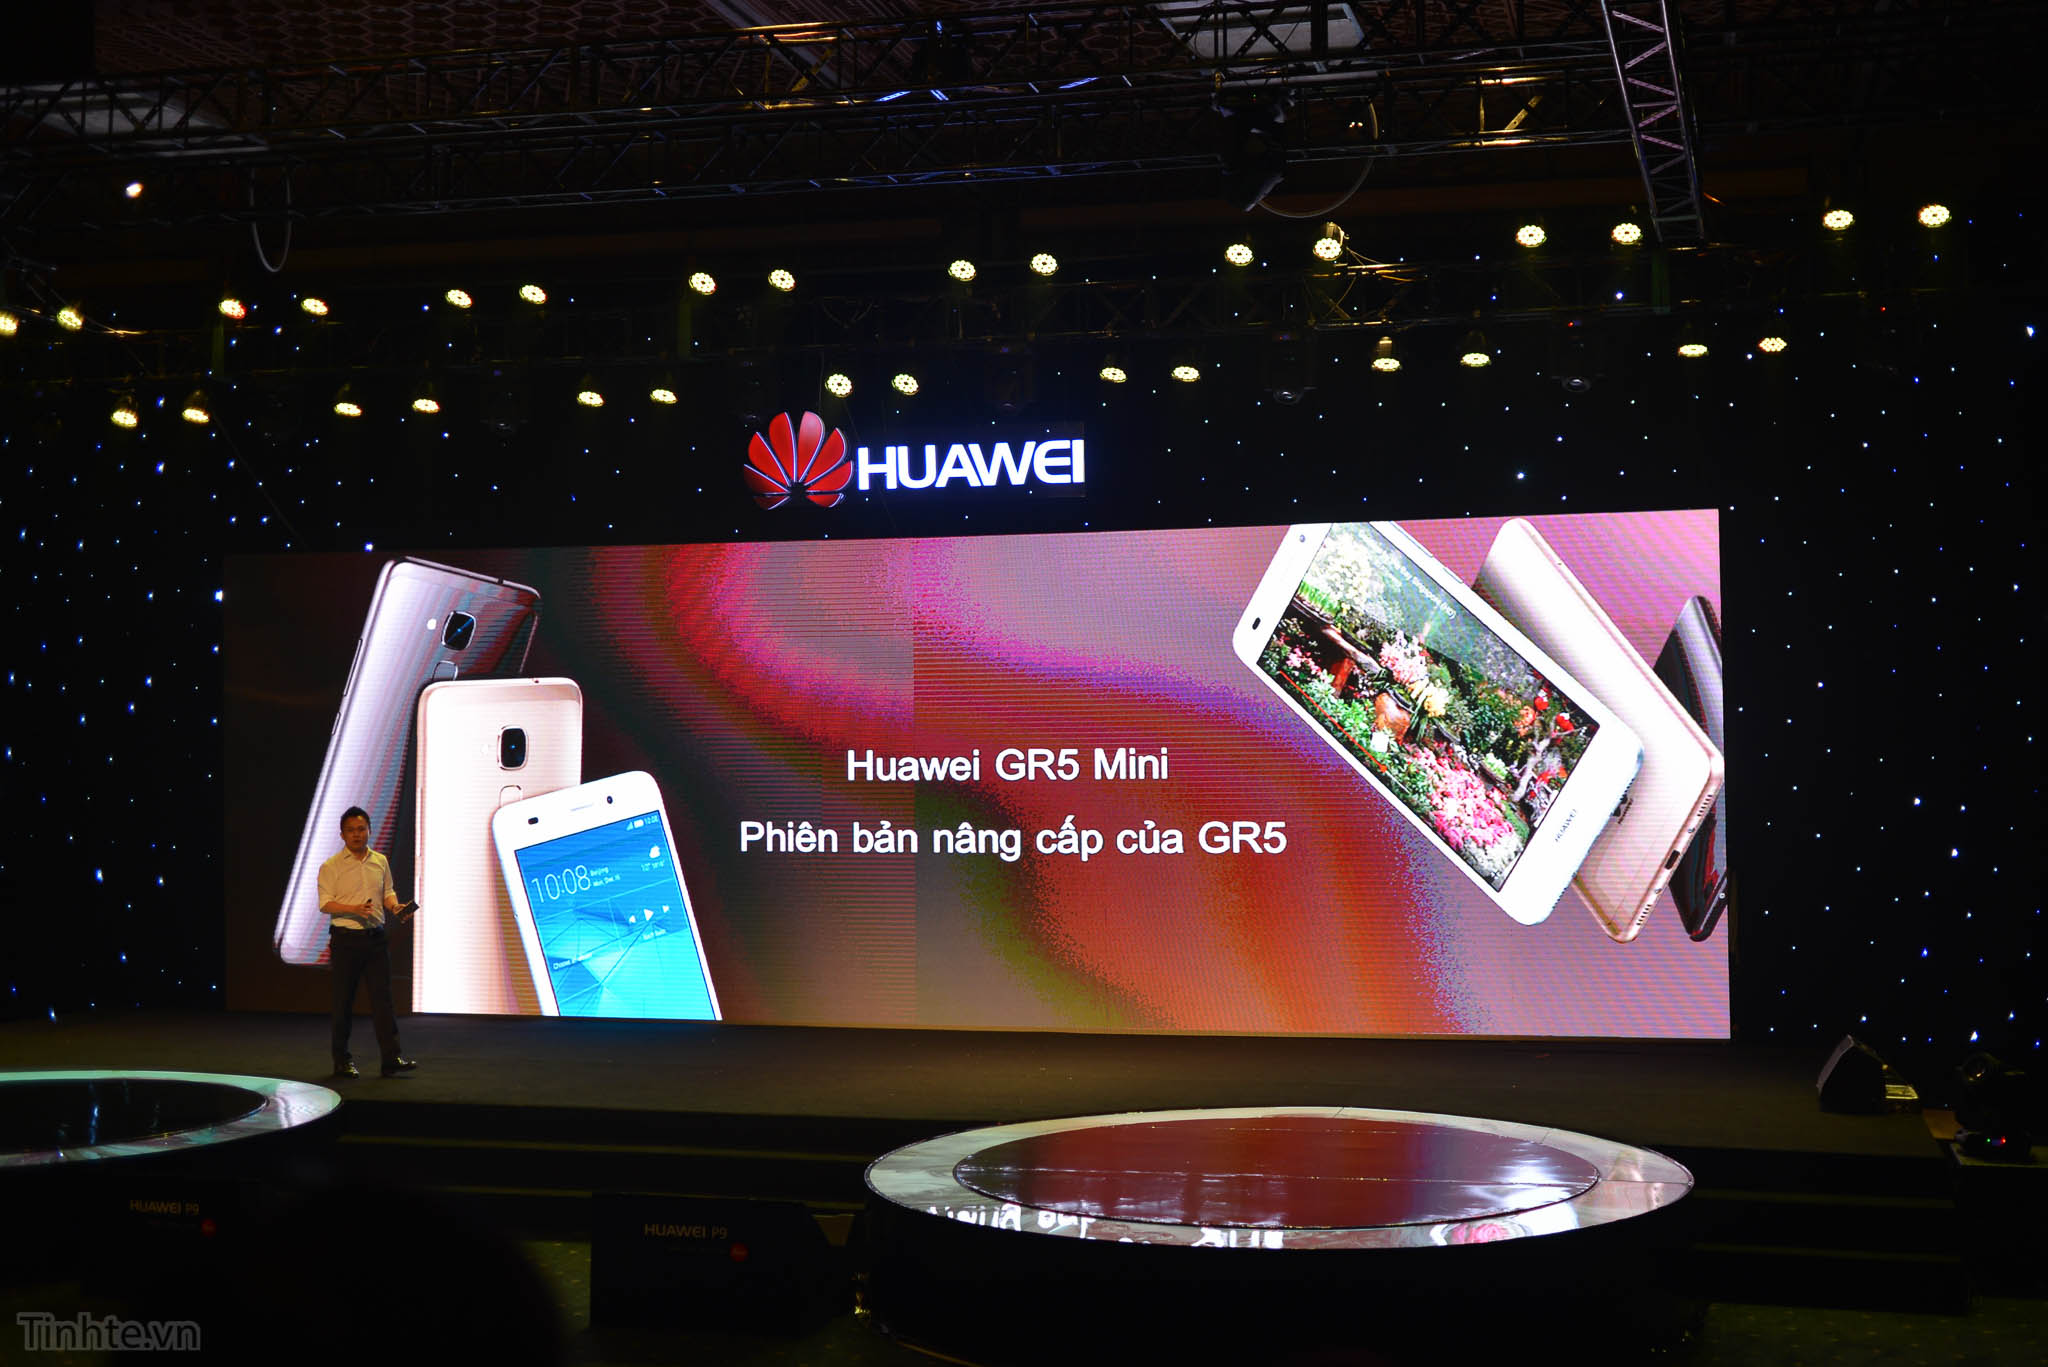 Huawei_P9_tinhte.vn-5.jpg